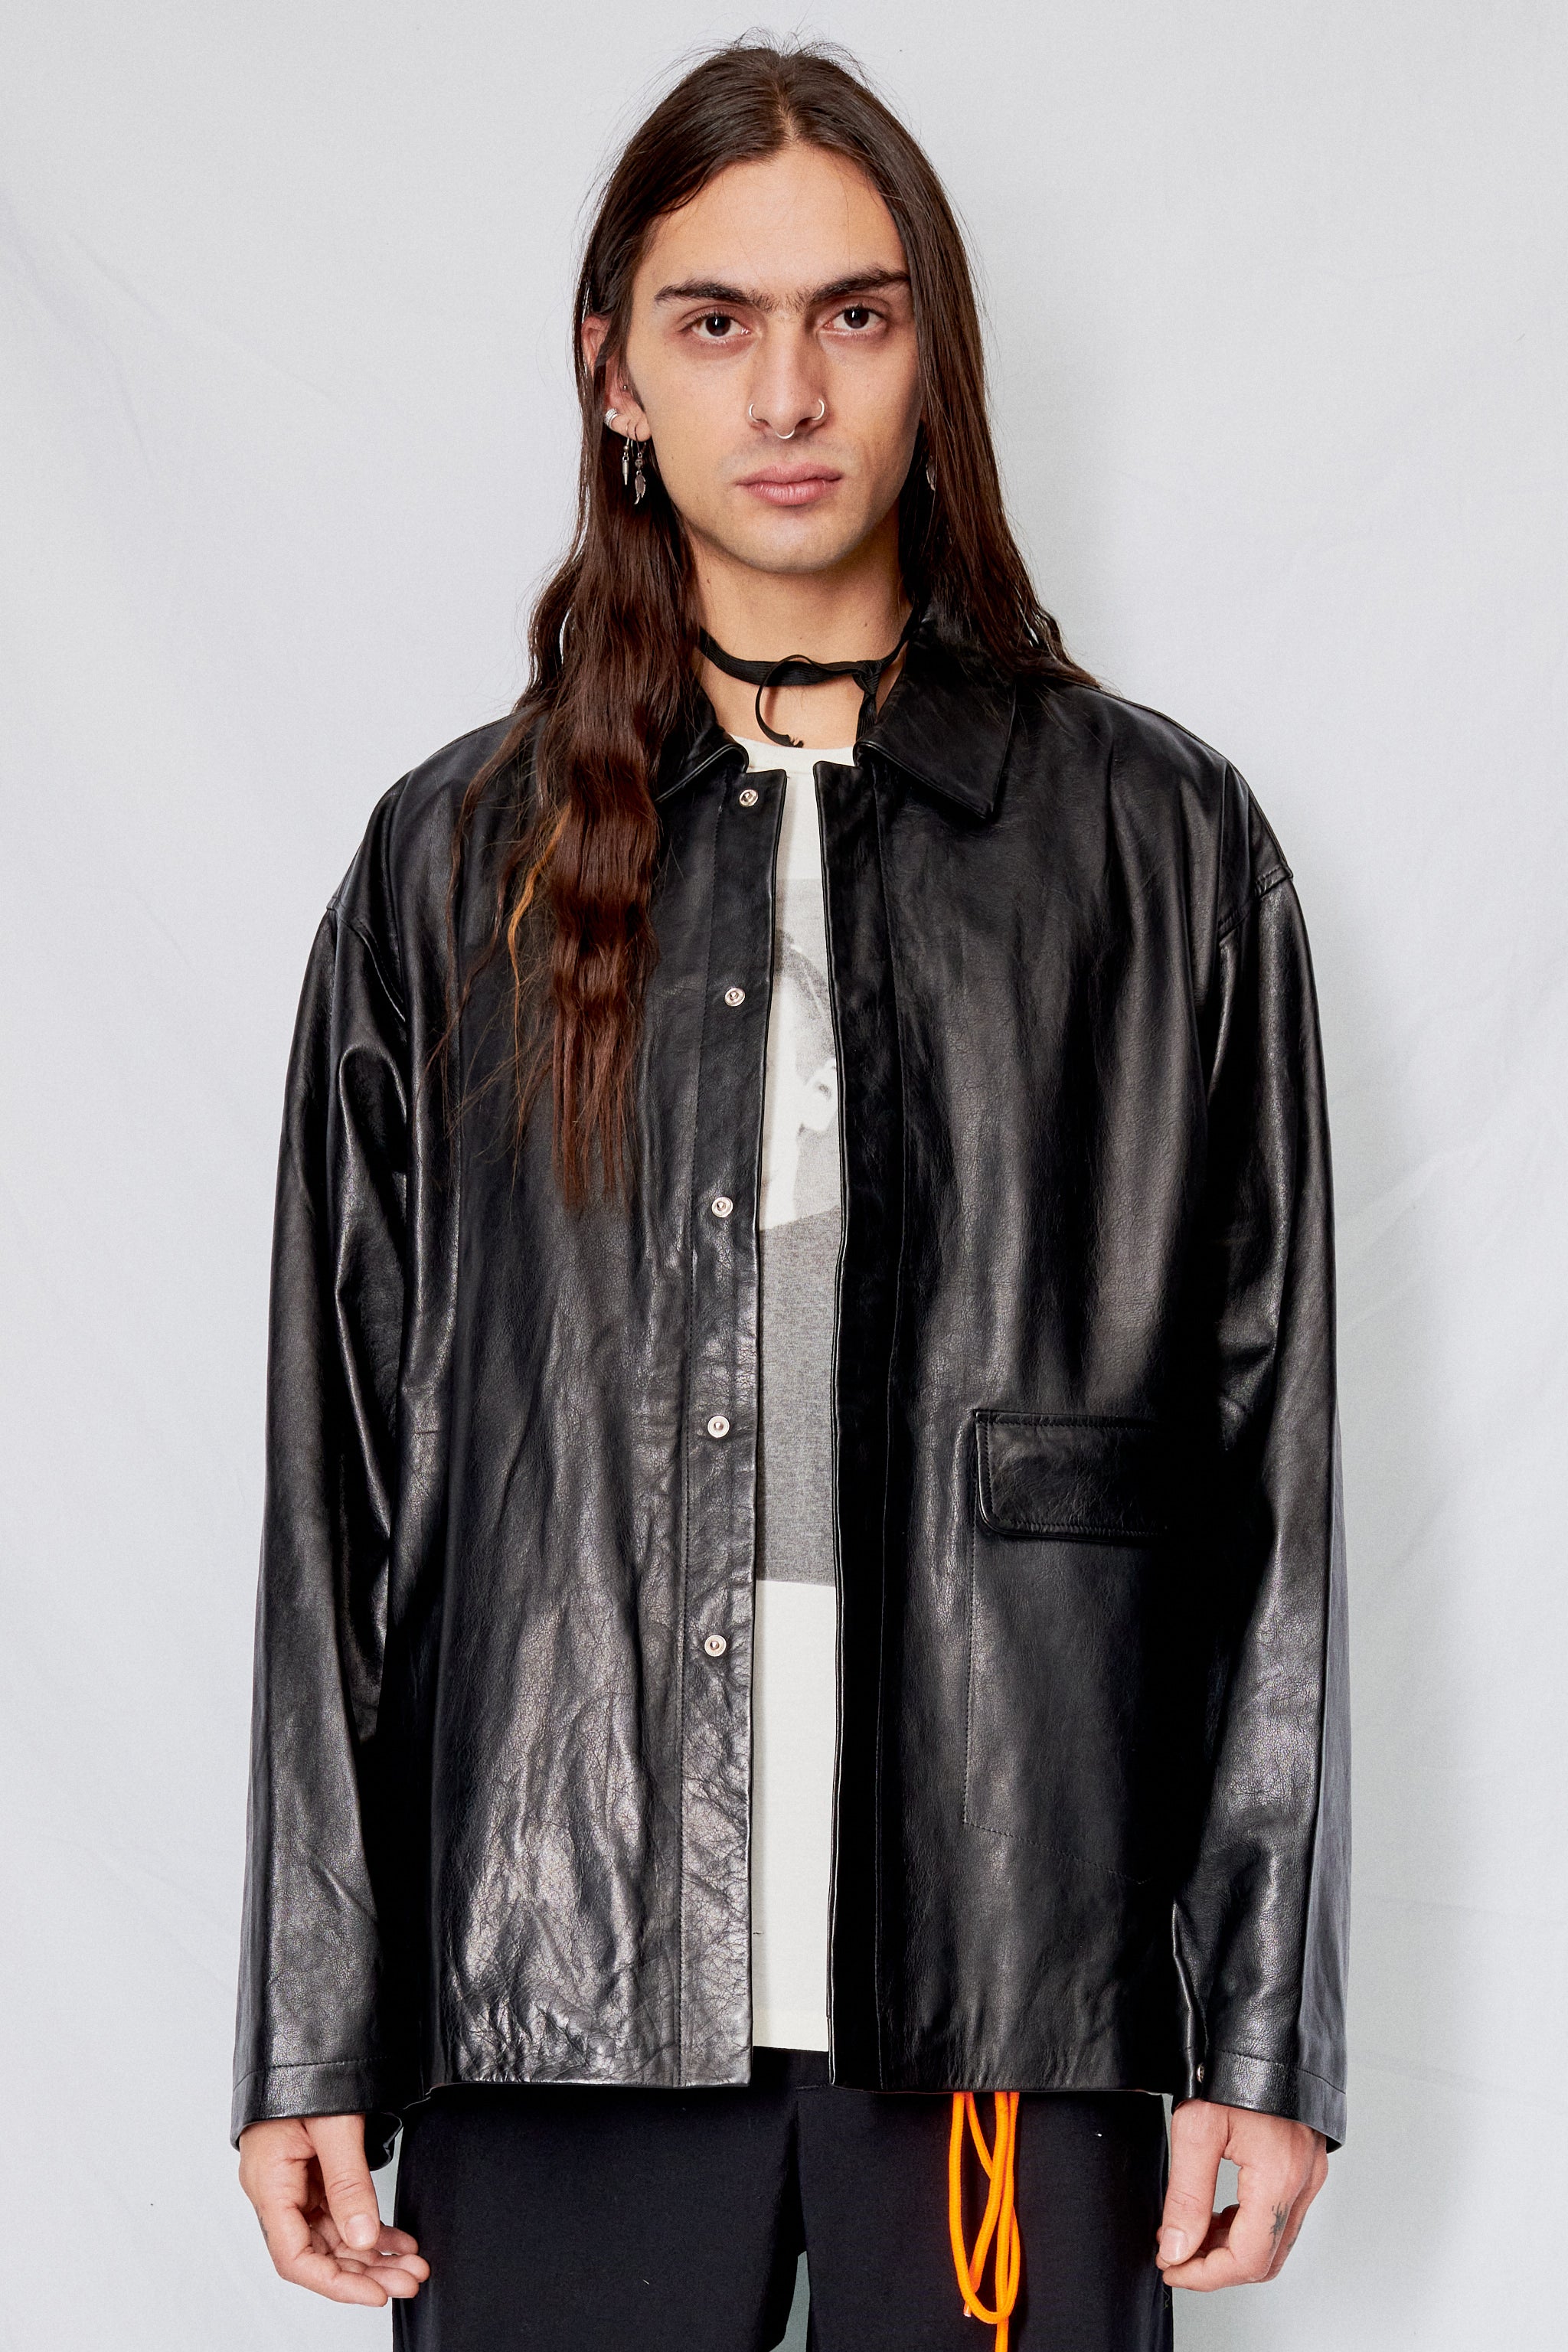 Unisex Leather Snap Shirtcoat